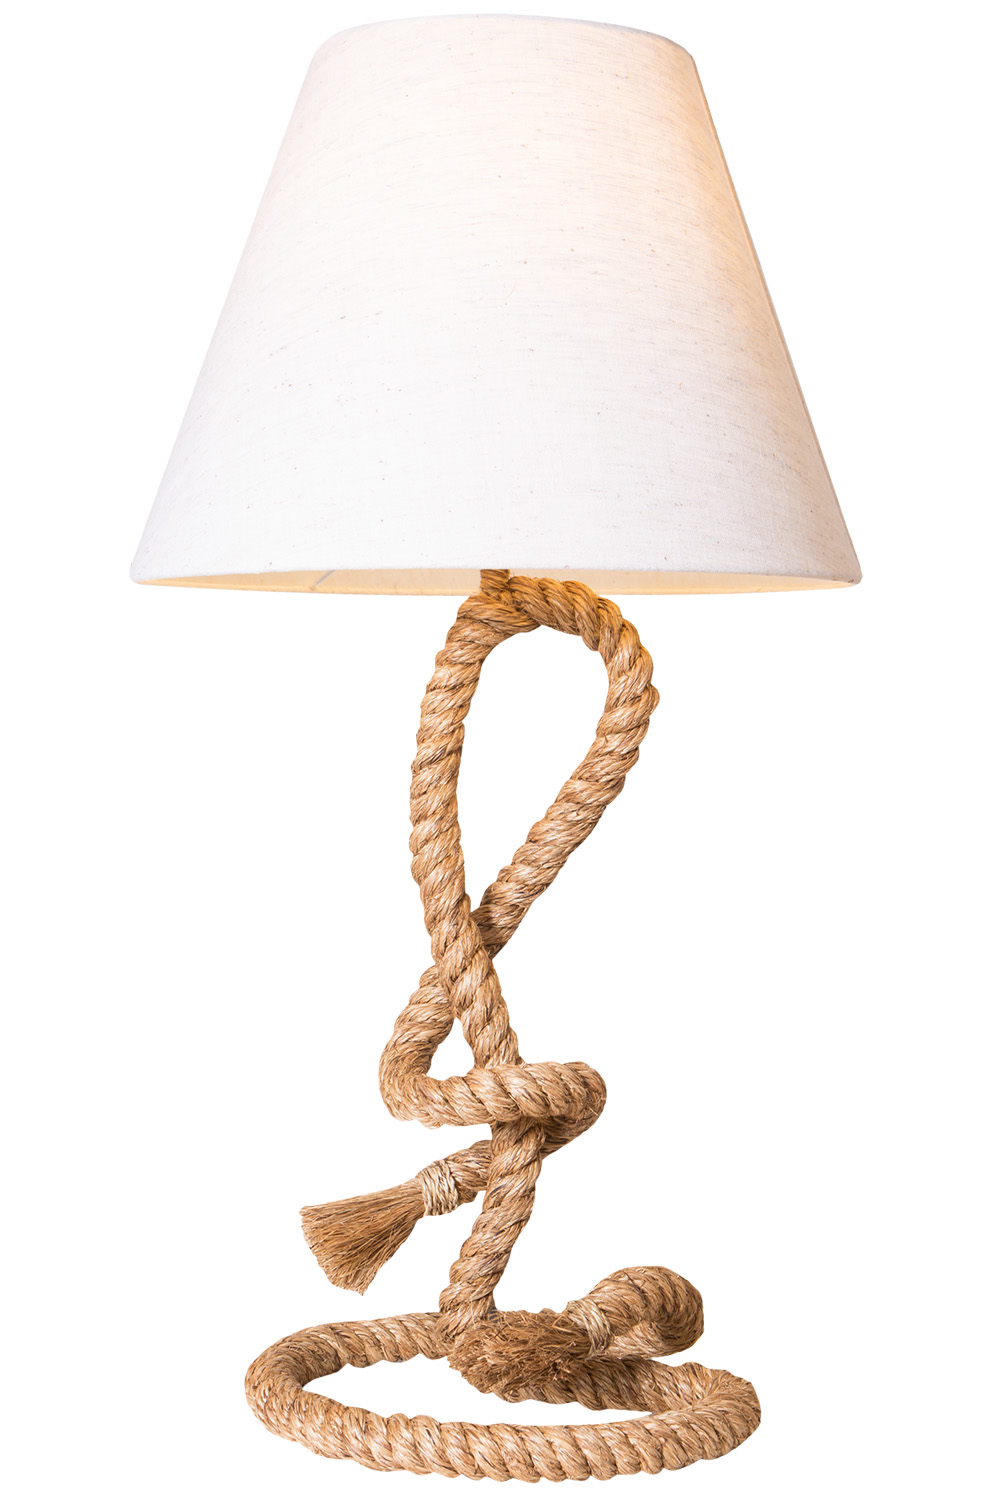 Tischlampe Tischleuchte SAN DIEGO Tau 85cm beige natur Maritim Design Tau-Lampe 